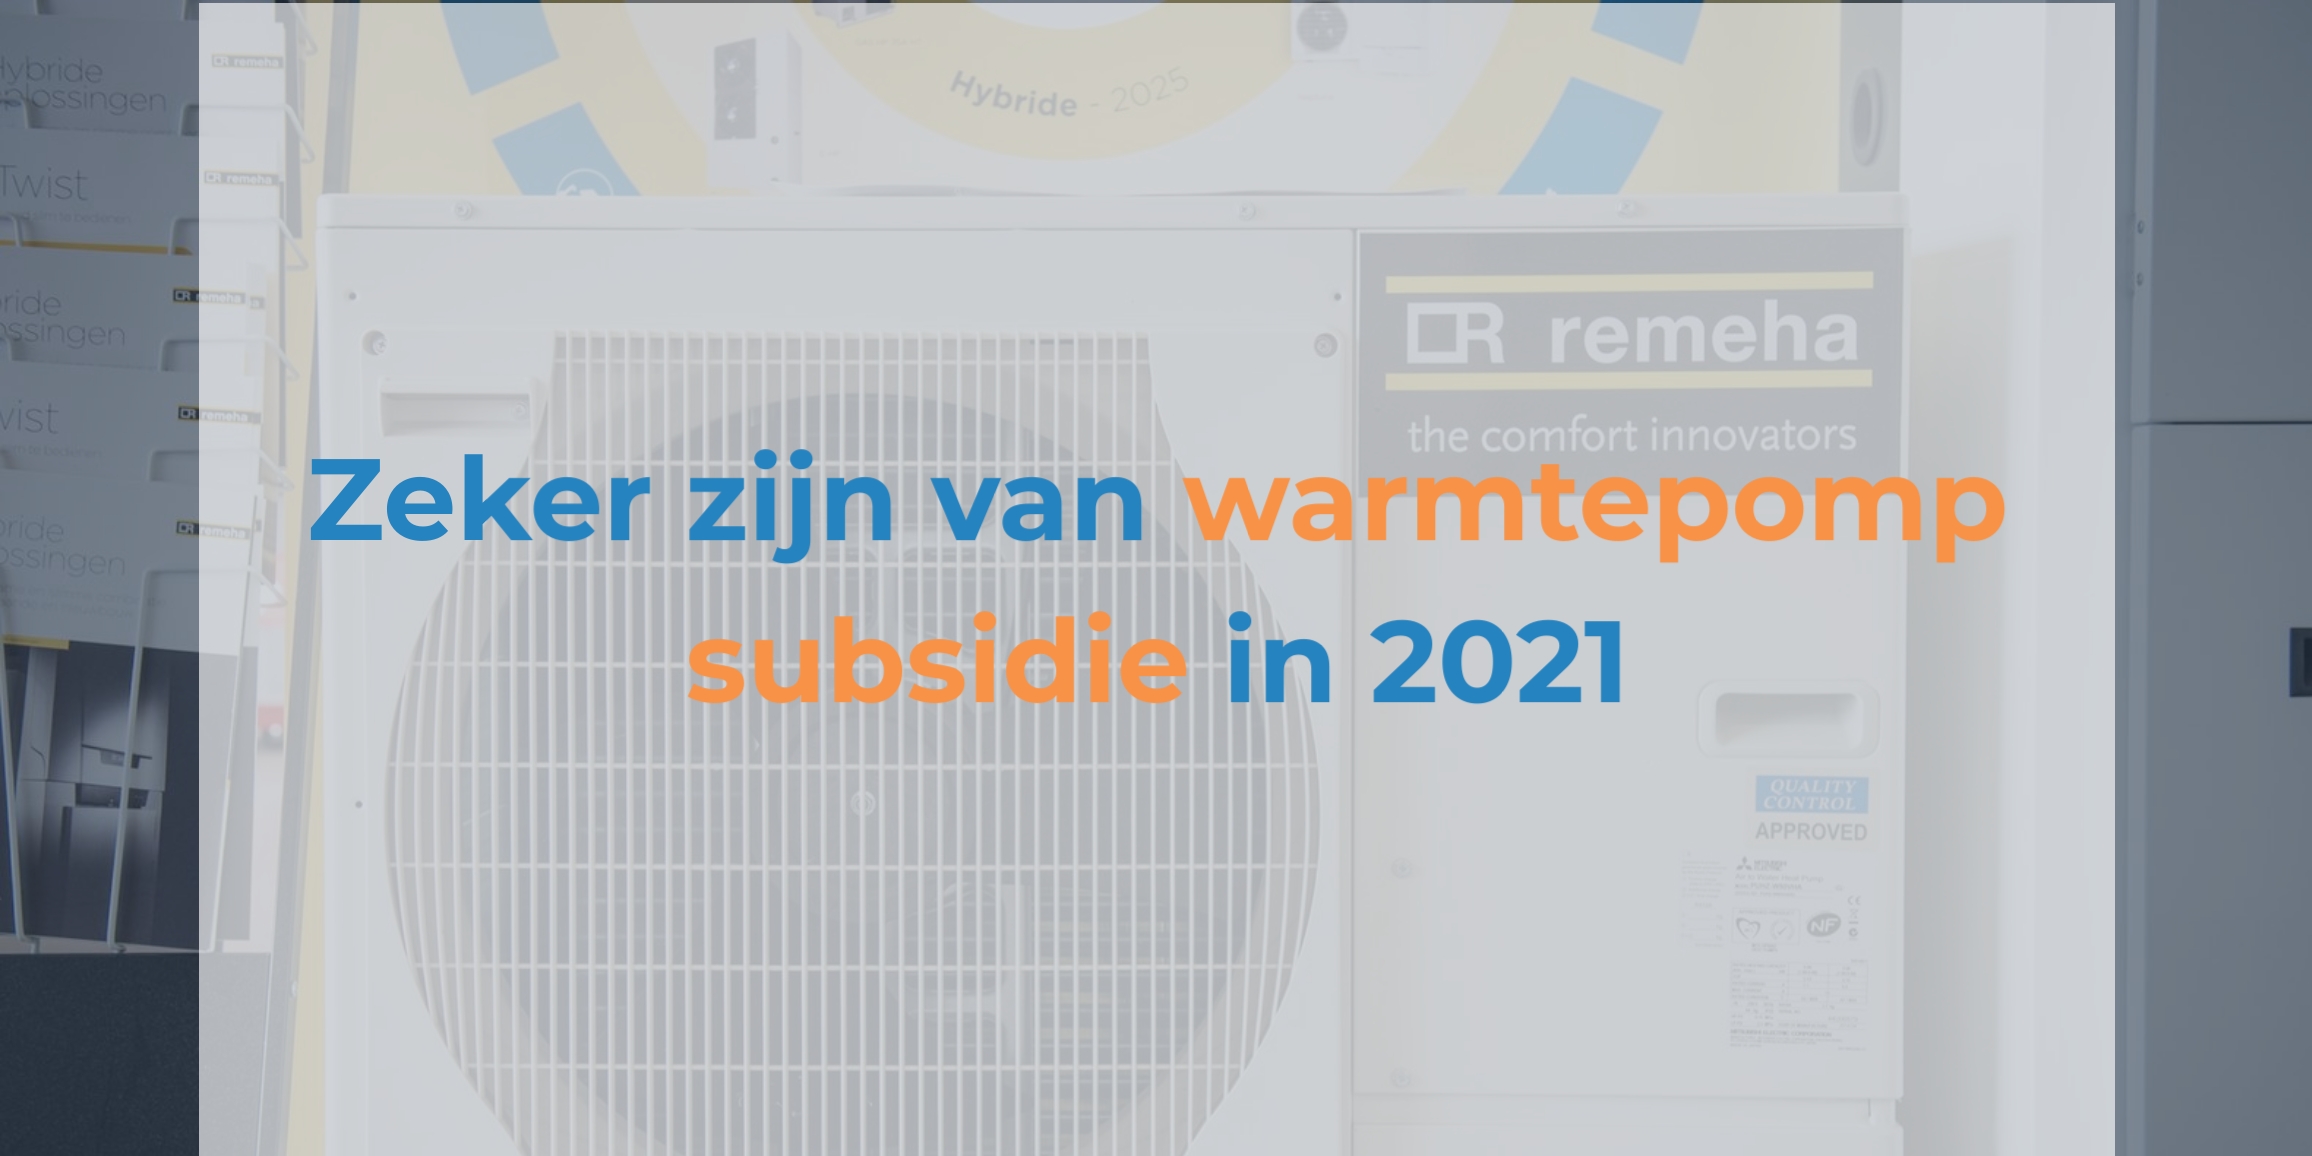 Warmtepomp subsidie 2021